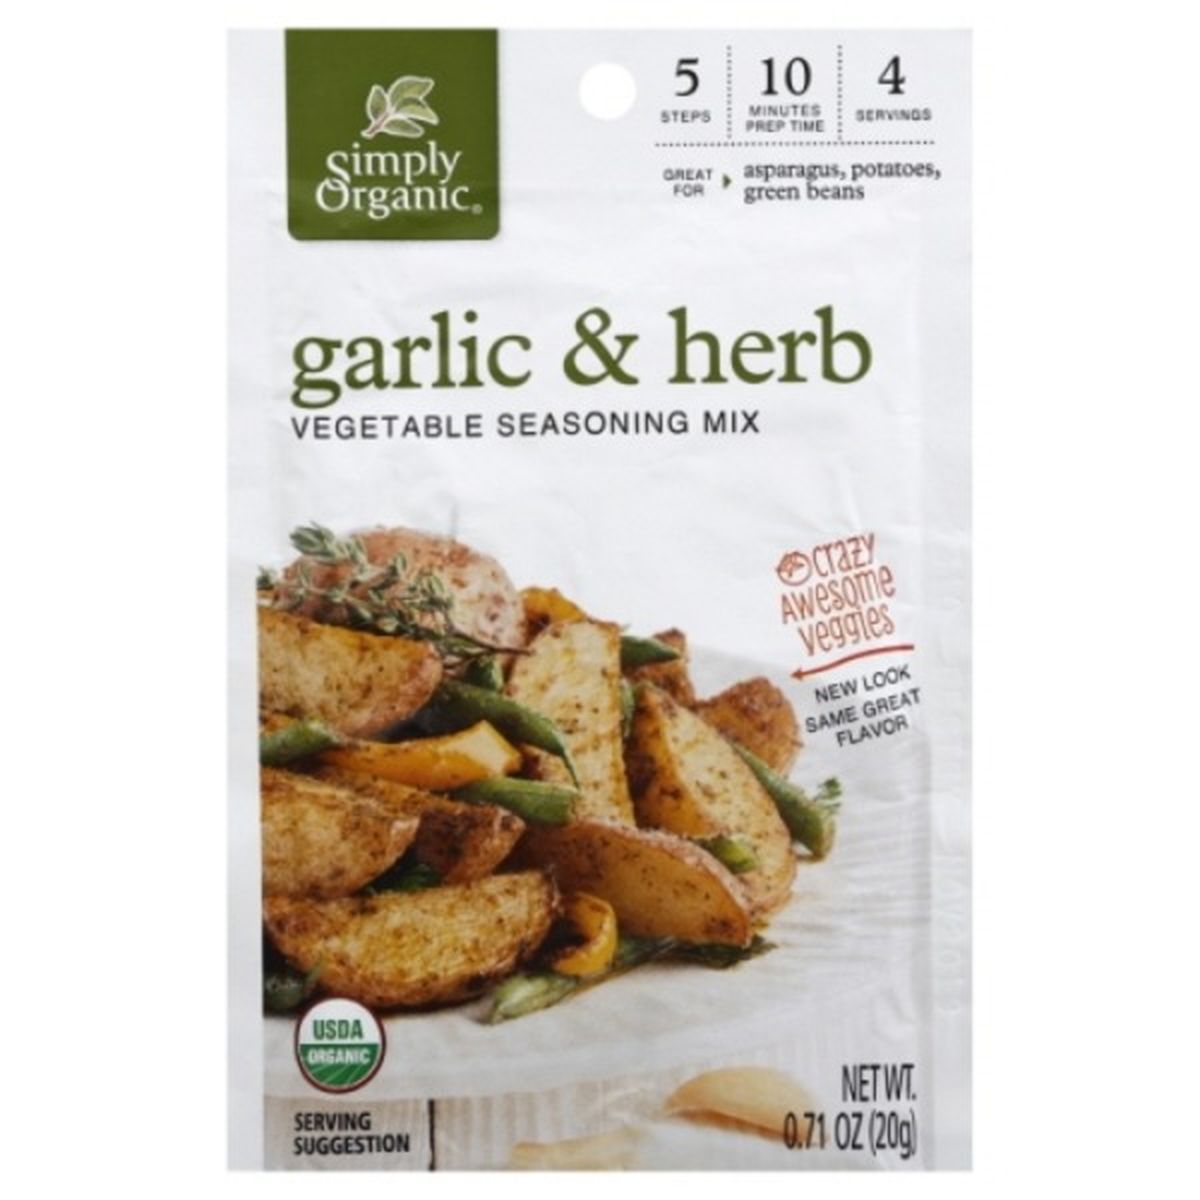 Calories in Simply Organic Seasoning Mix, Vegetable, Organic, Garlic & Herb